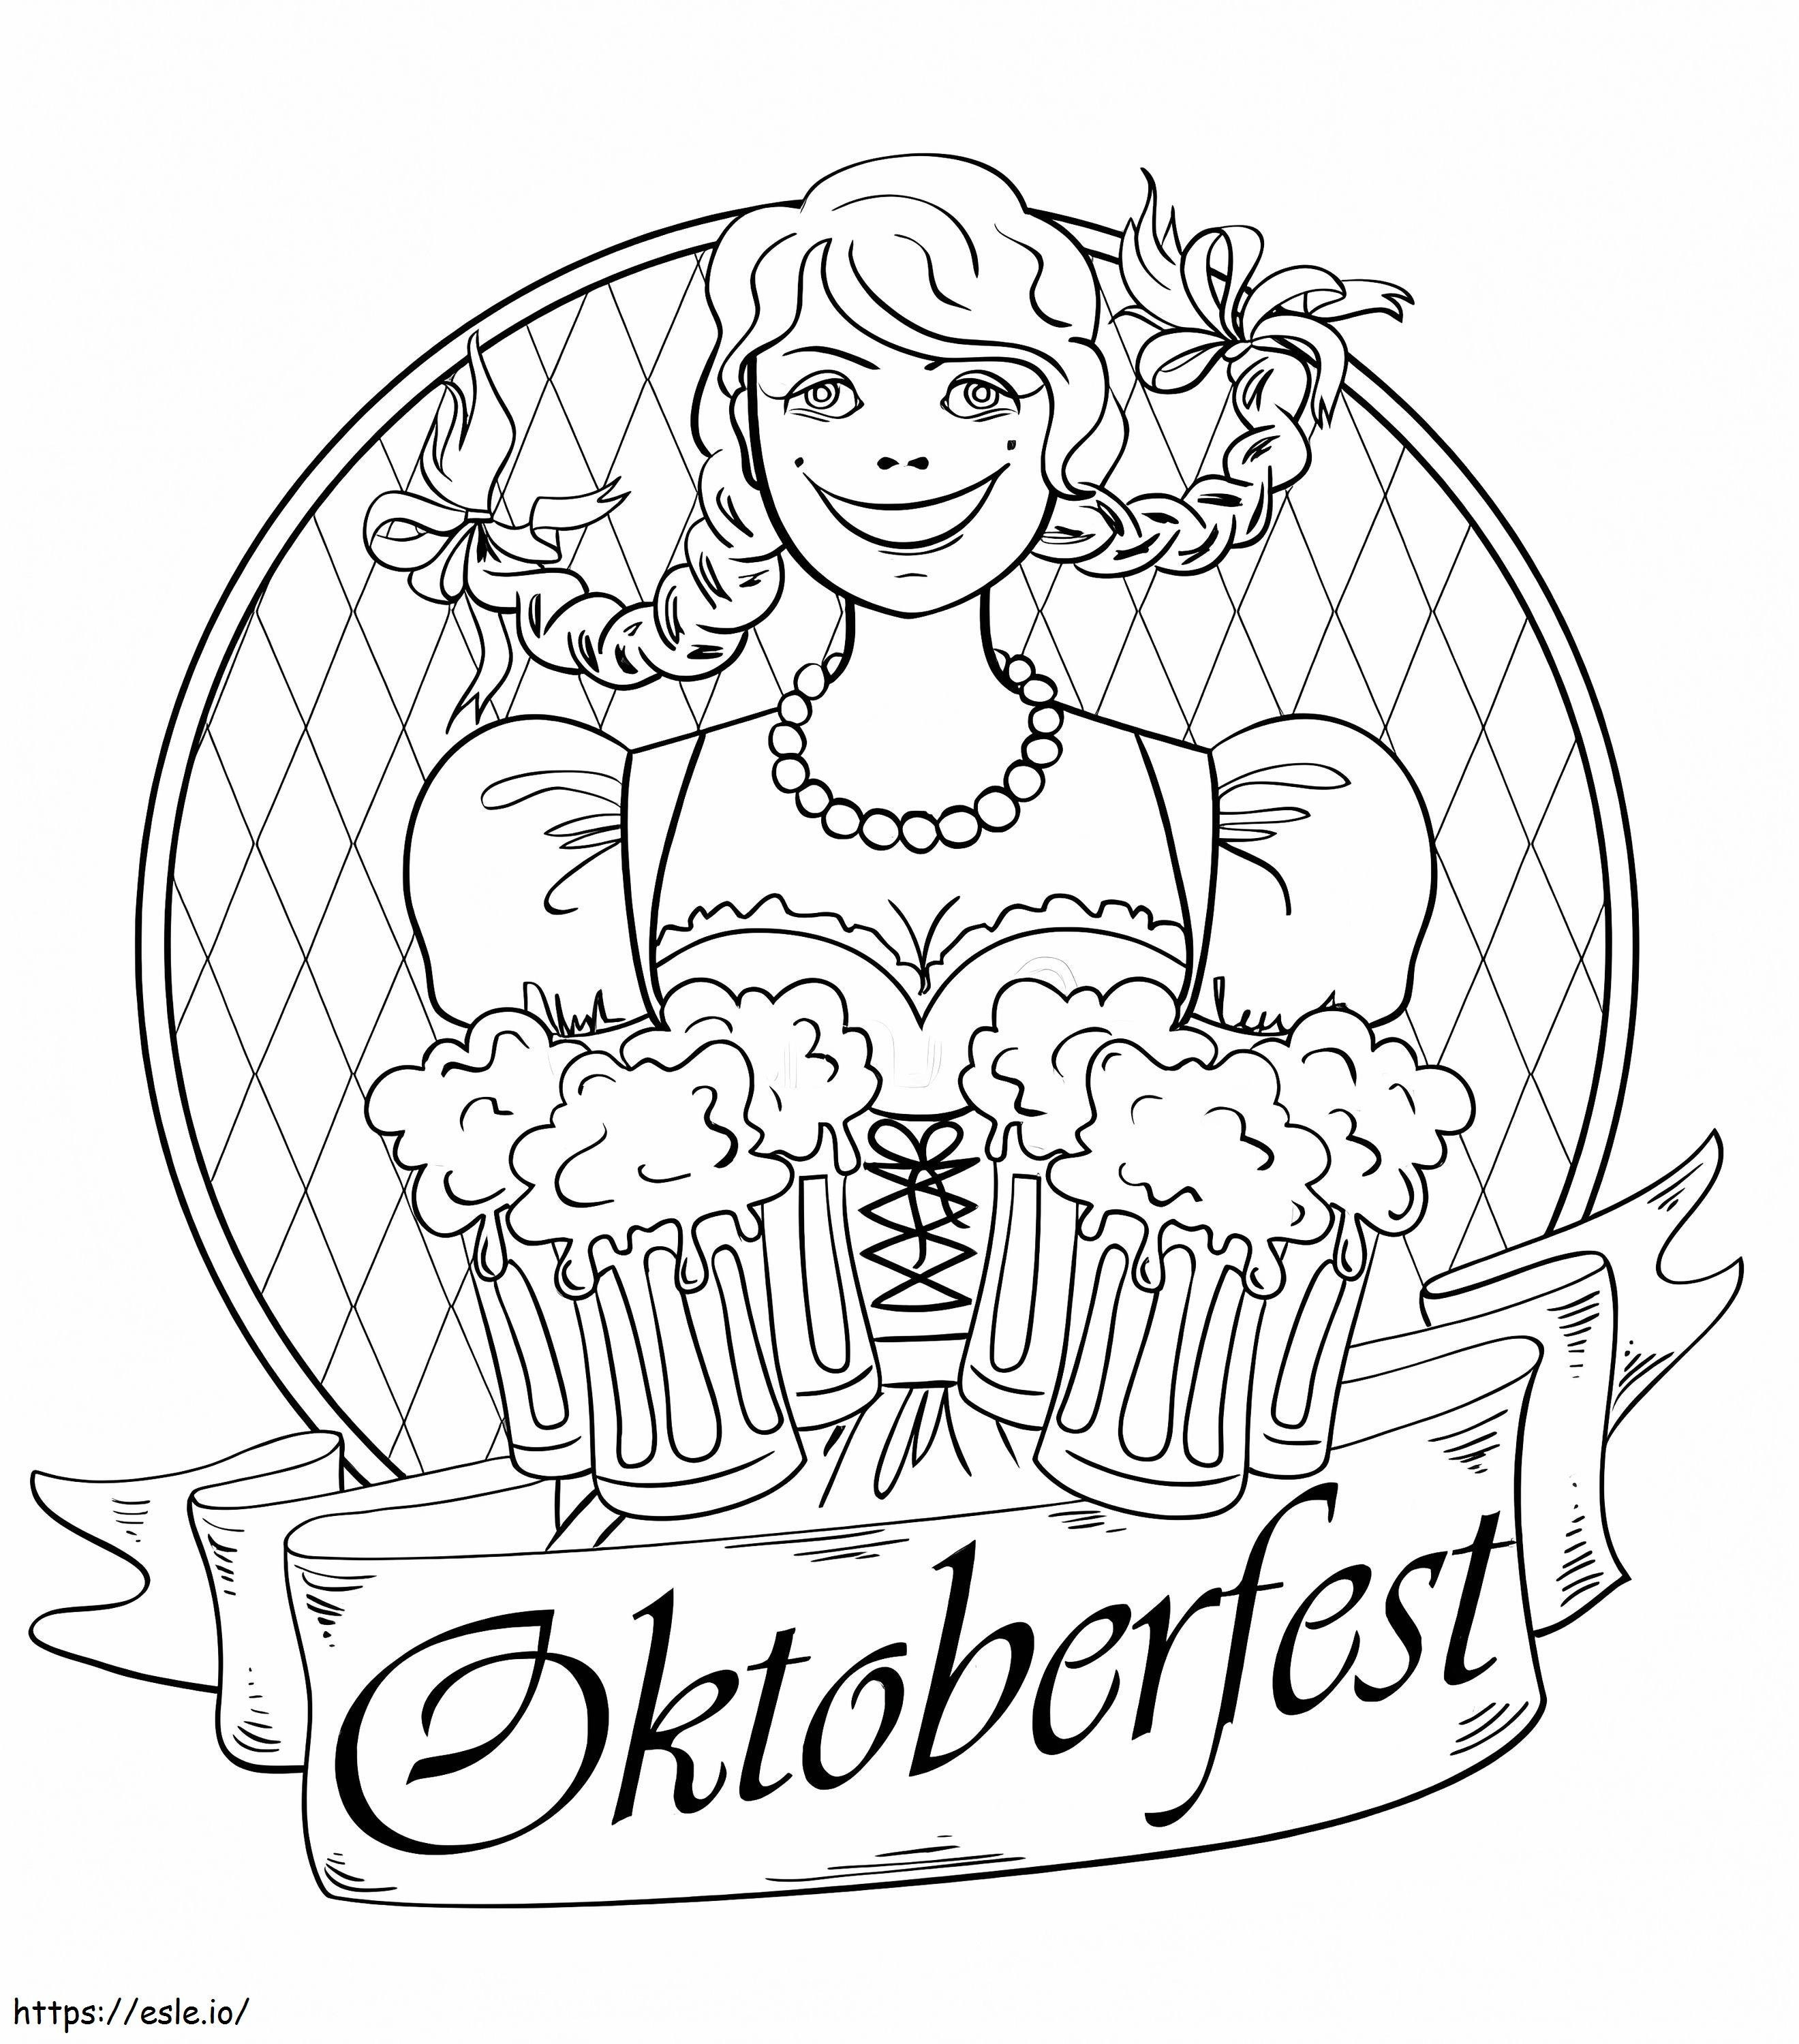 Oktoberfestin logo värityskuva